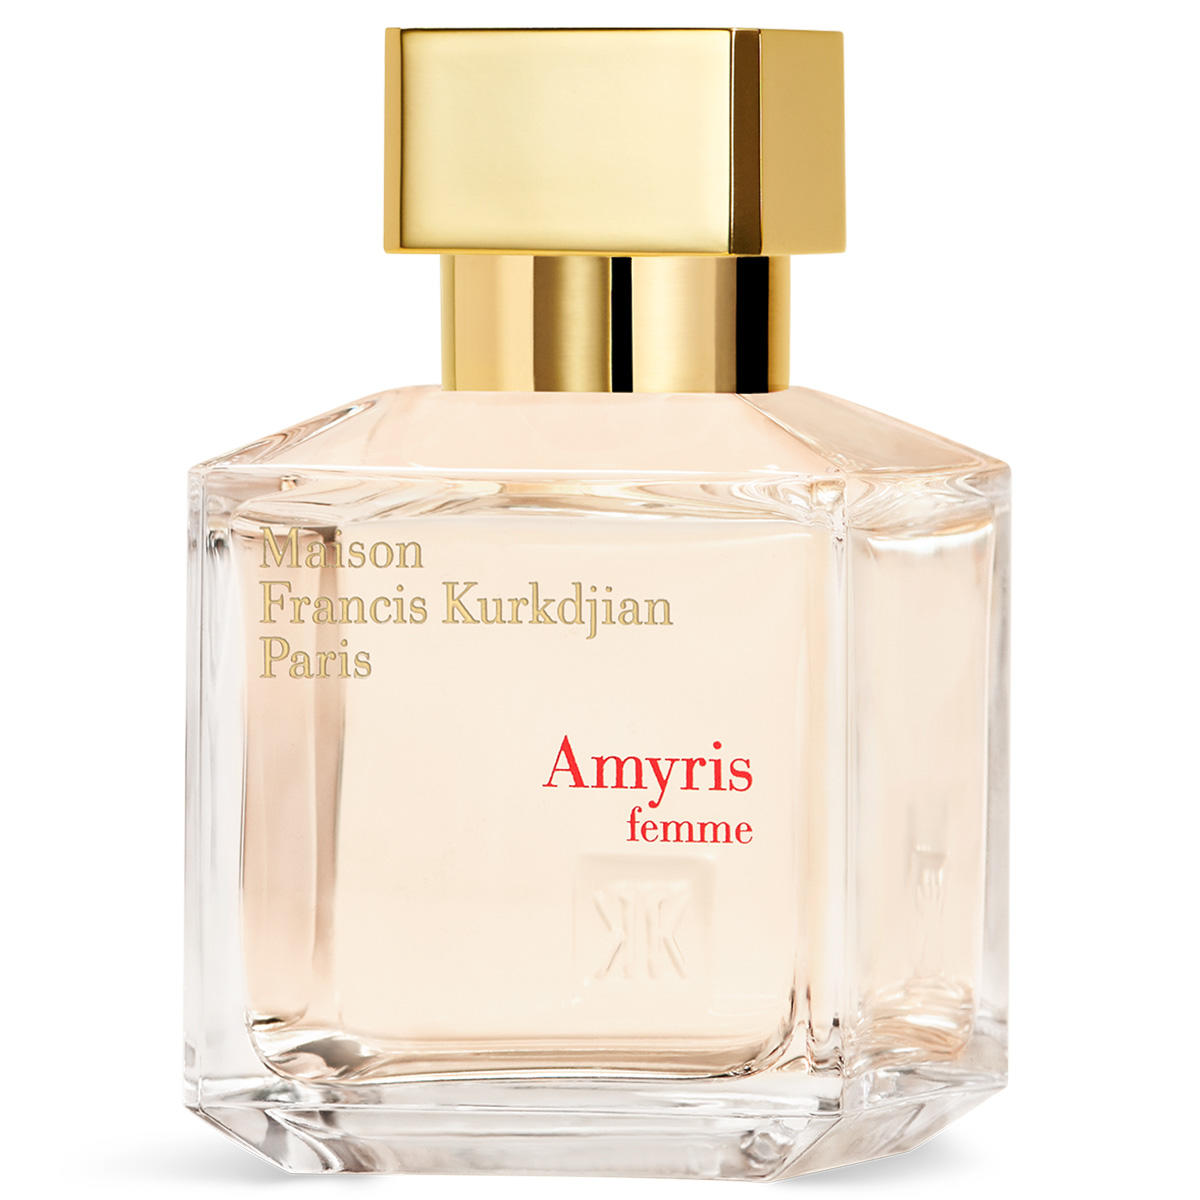 Maison Francis Kurkdjian Paris Amyris femme Eau de Parfum 70 ml - 3